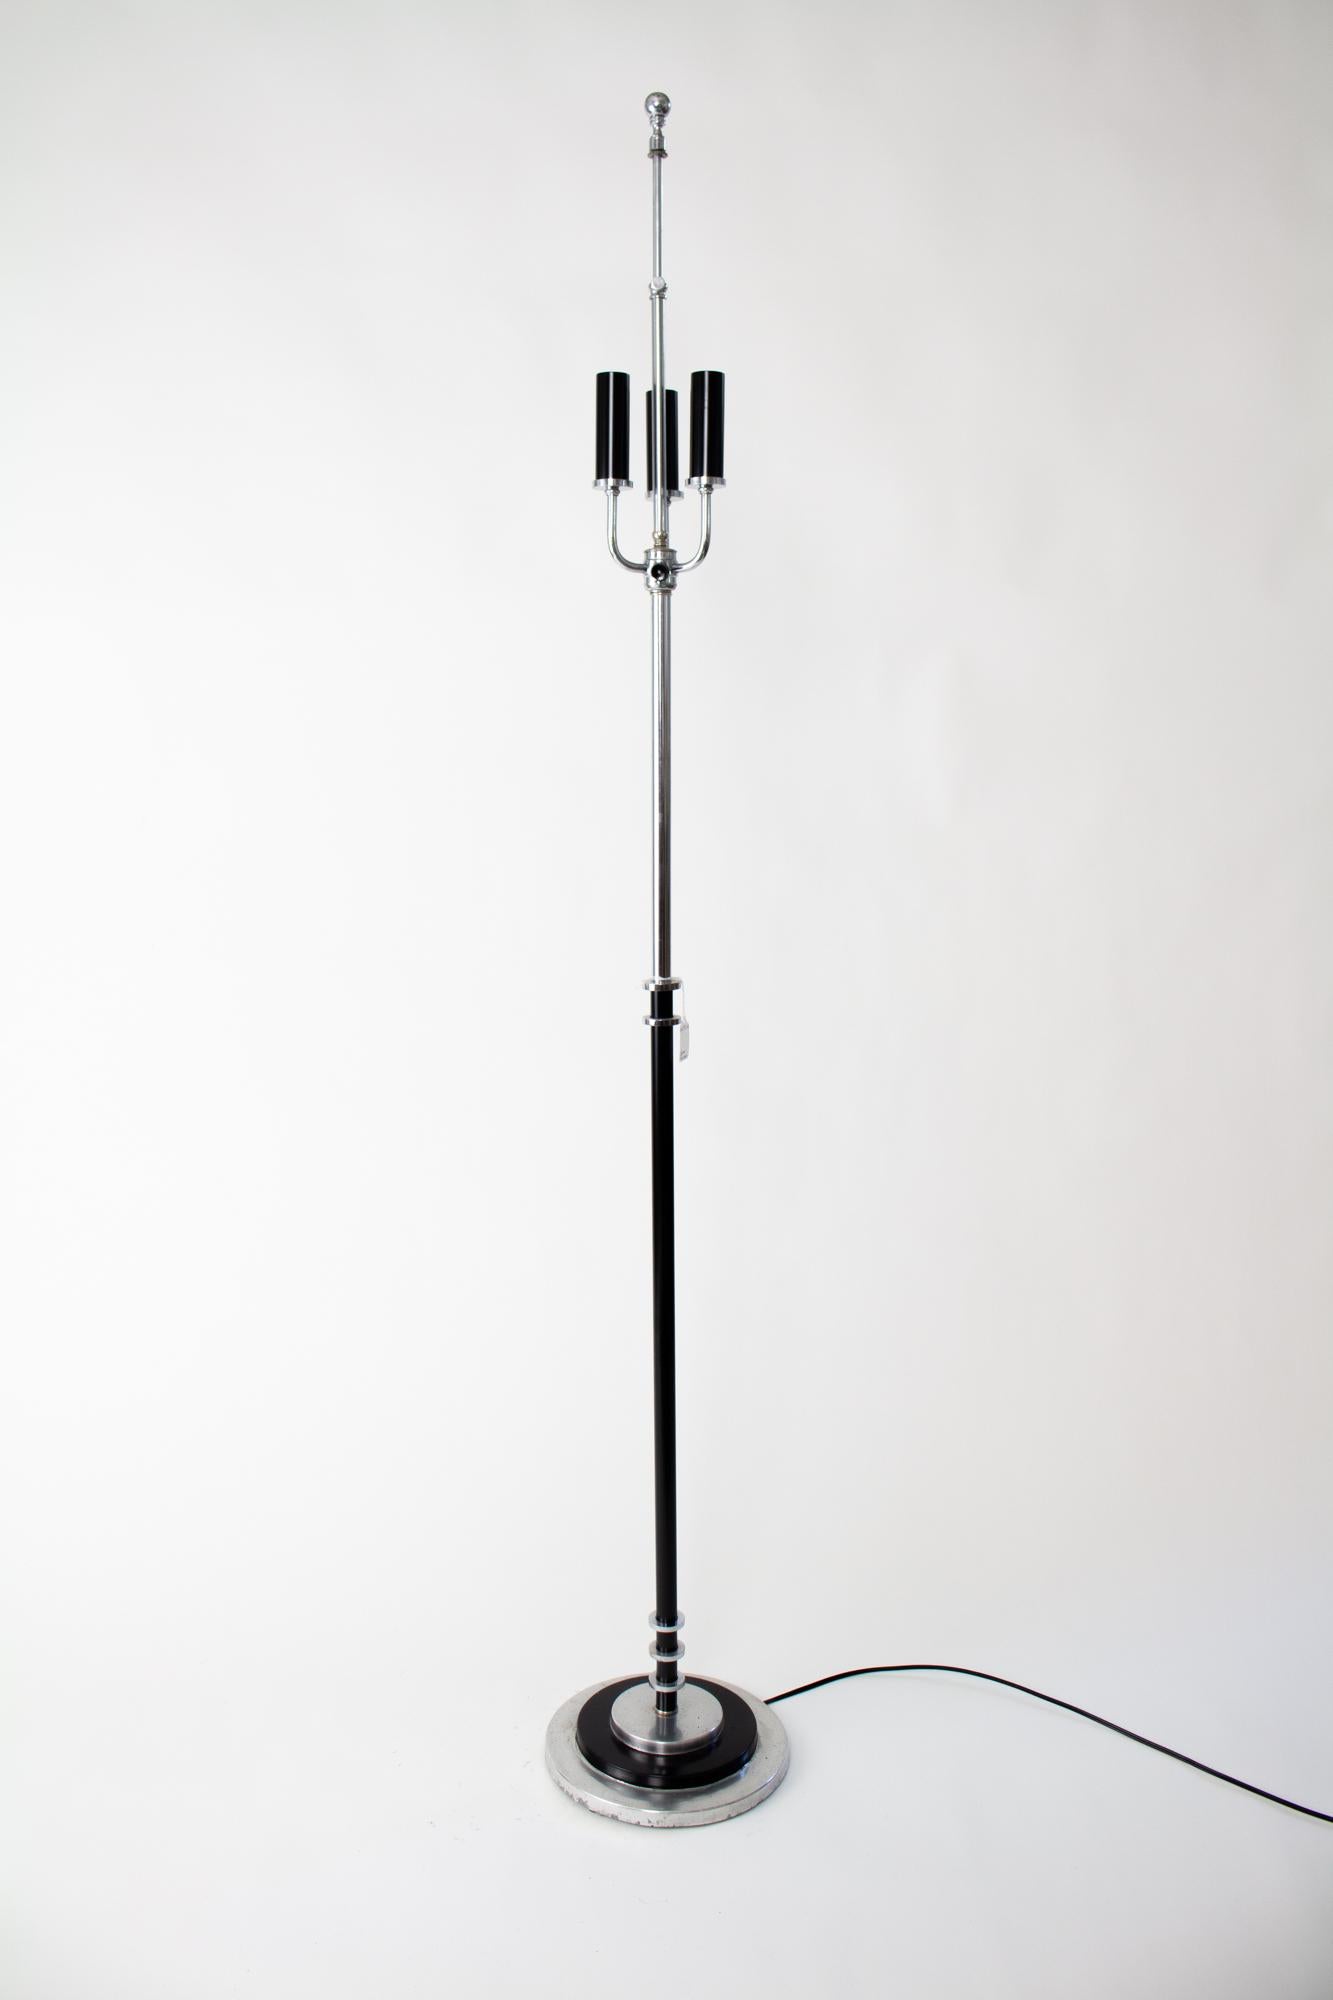 Art Deco Stehlampe des frühen 20. Jahrhunderts, verchromt und schwarz, mit Fadenlampenschirm. Modernes Art Deco Design in einer silbernen und schwarzen Stehleuchte. Die Metalle sind eine Kombination aus verchromtem und Aluminium. Drei Kerzenlichter,